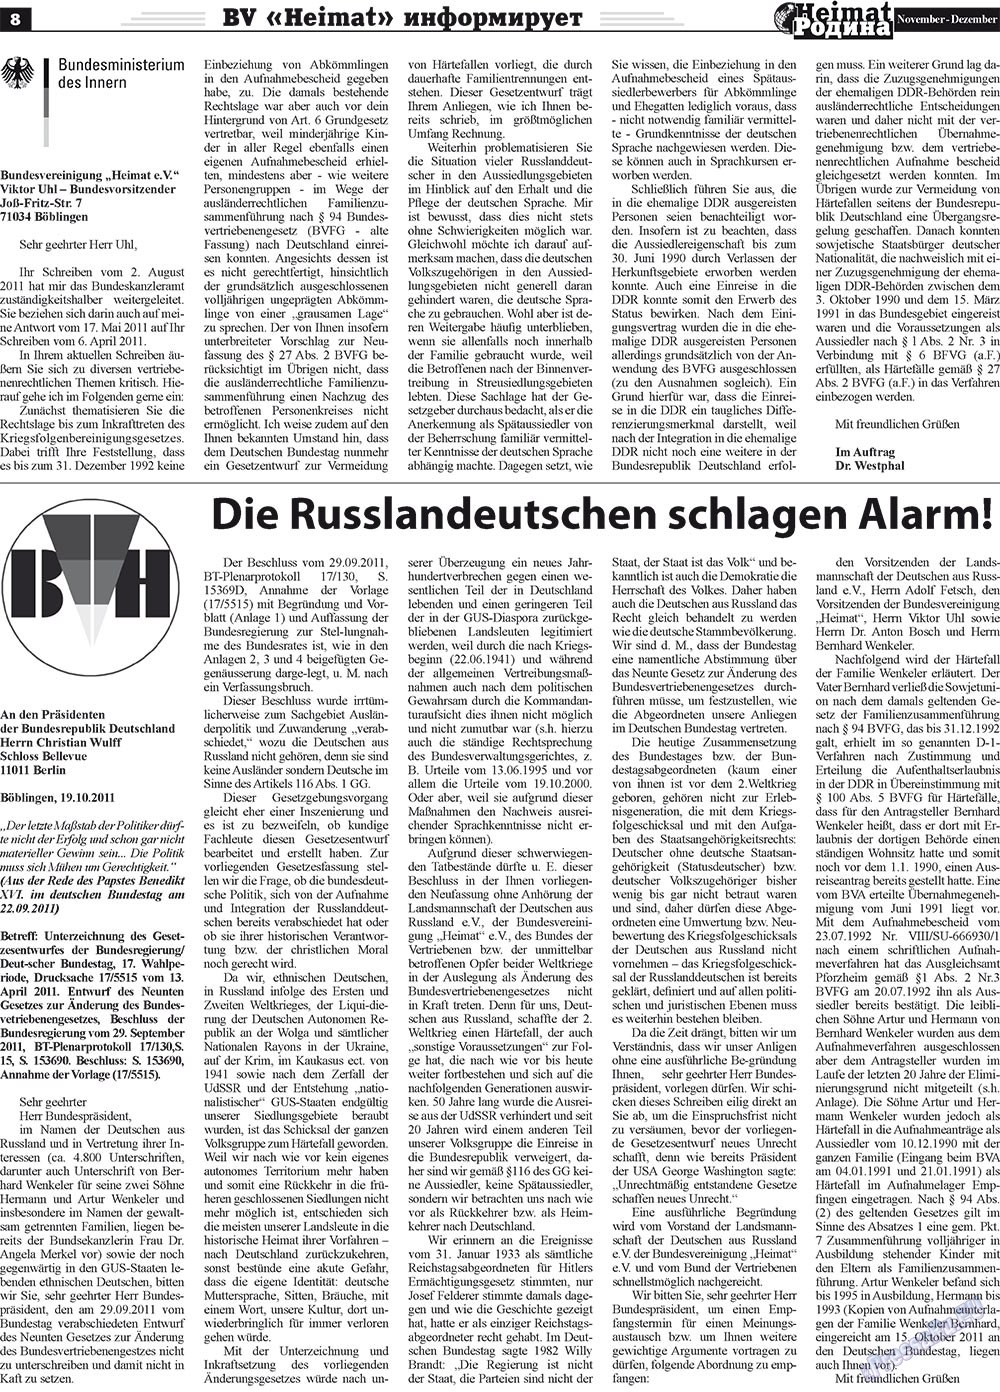 Heimat-Родина (газета). 2011 год, номер 11, стр. 8